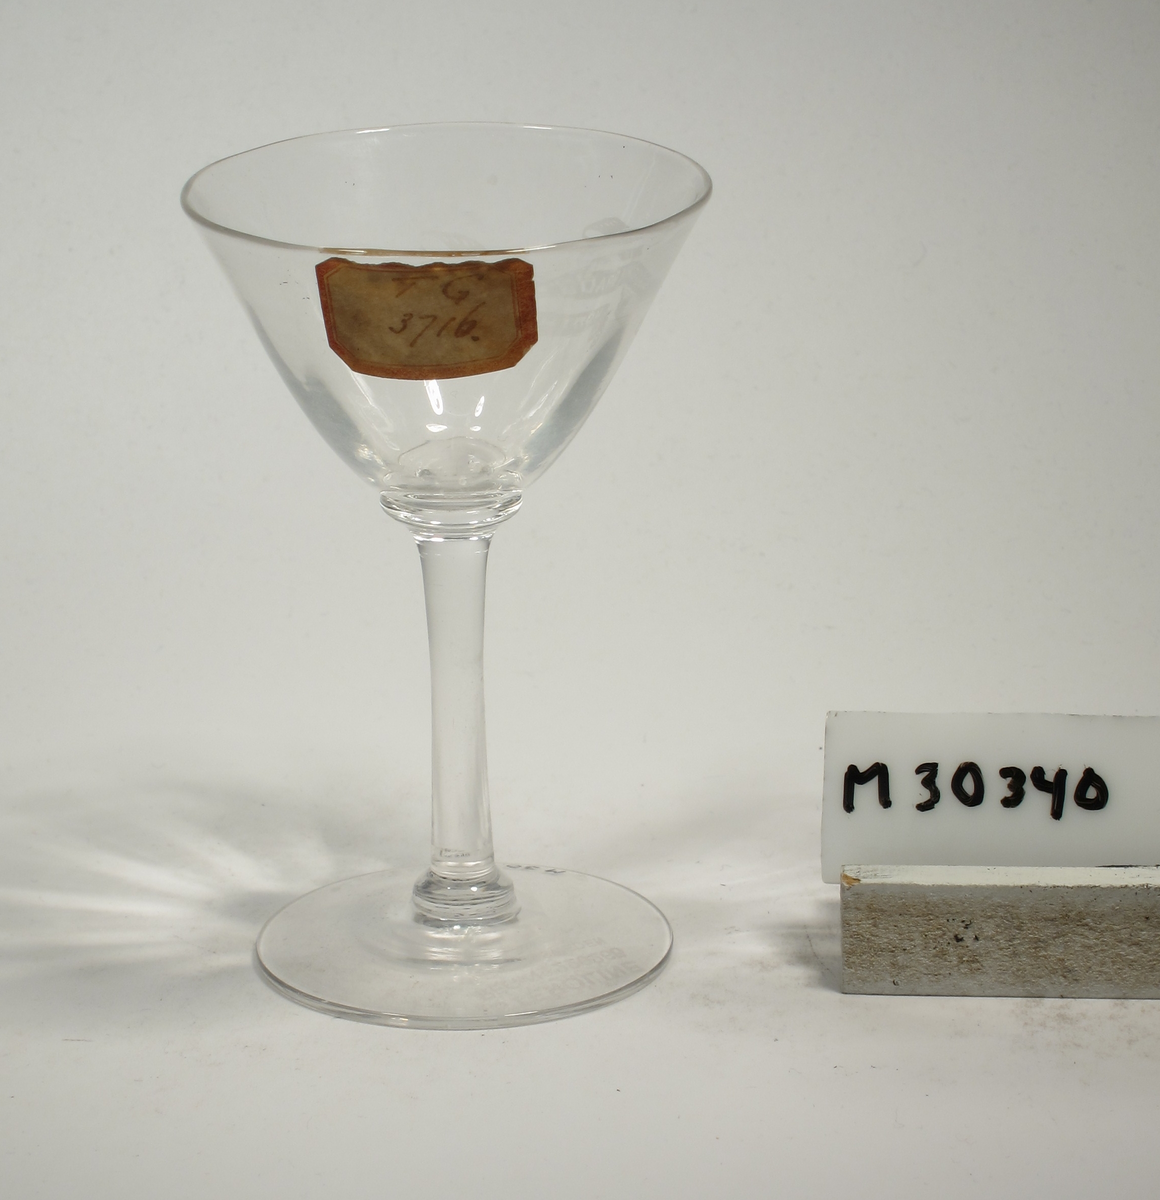 Konande kupa med tunt glas och optik. Etsad text i bandslinga: "GEORGE BRADSHAW NORTHHAMPTON"